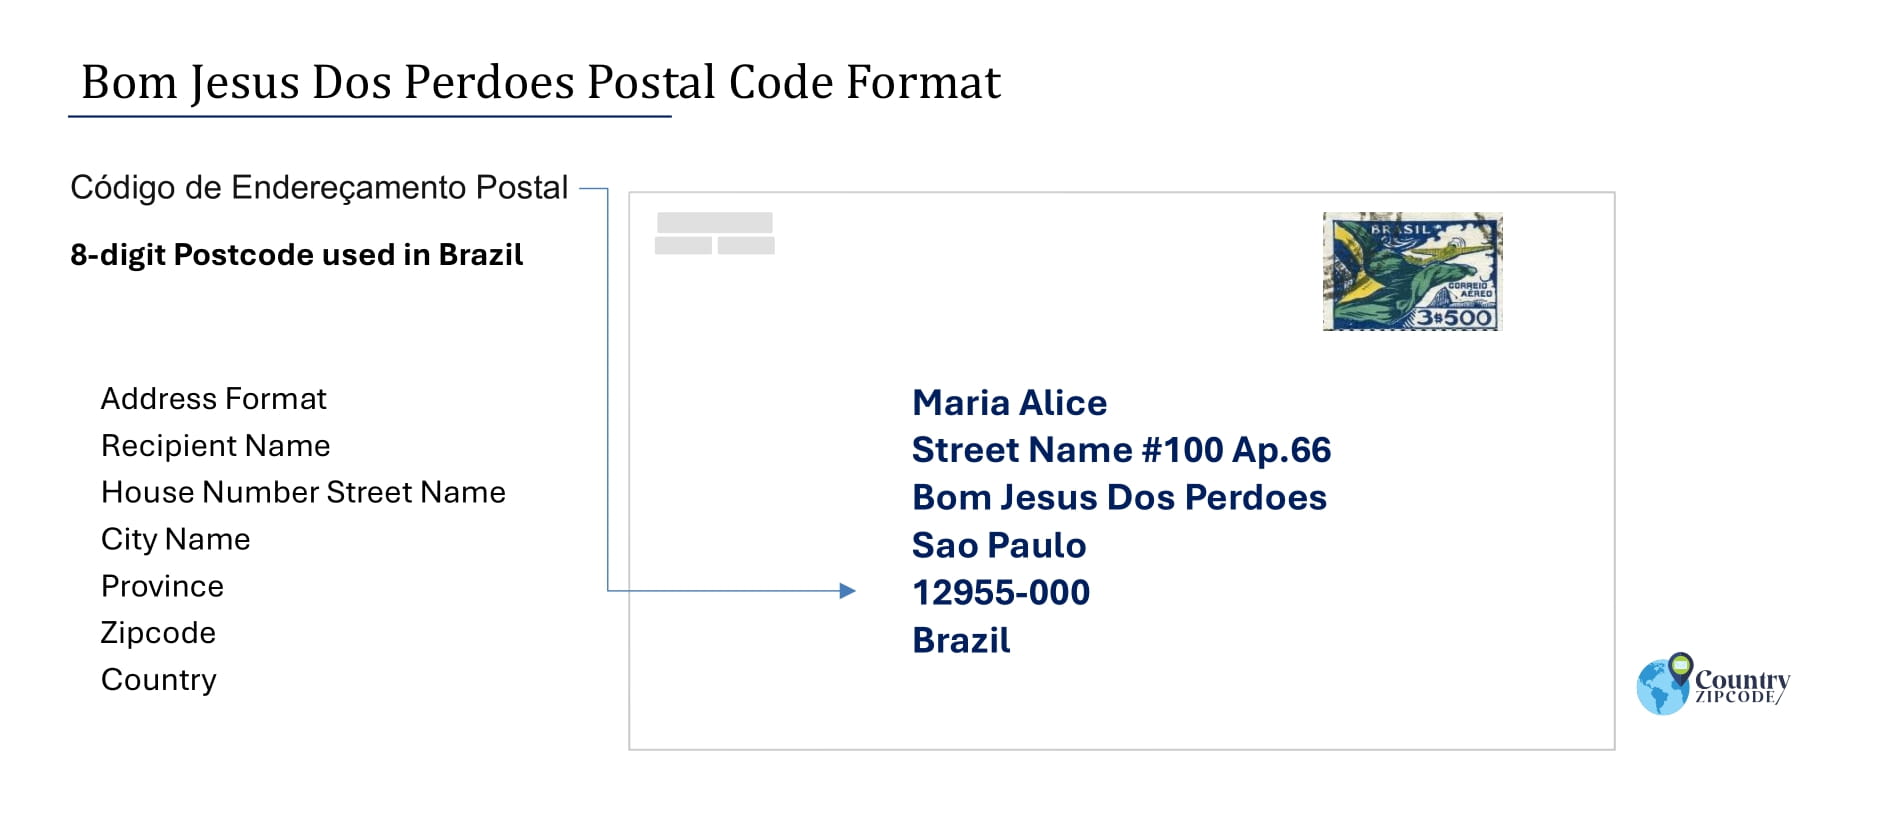 Example of Codigo de Enderecamento Postal and Address format of Bom Jesus Dos Perdoes Brazil